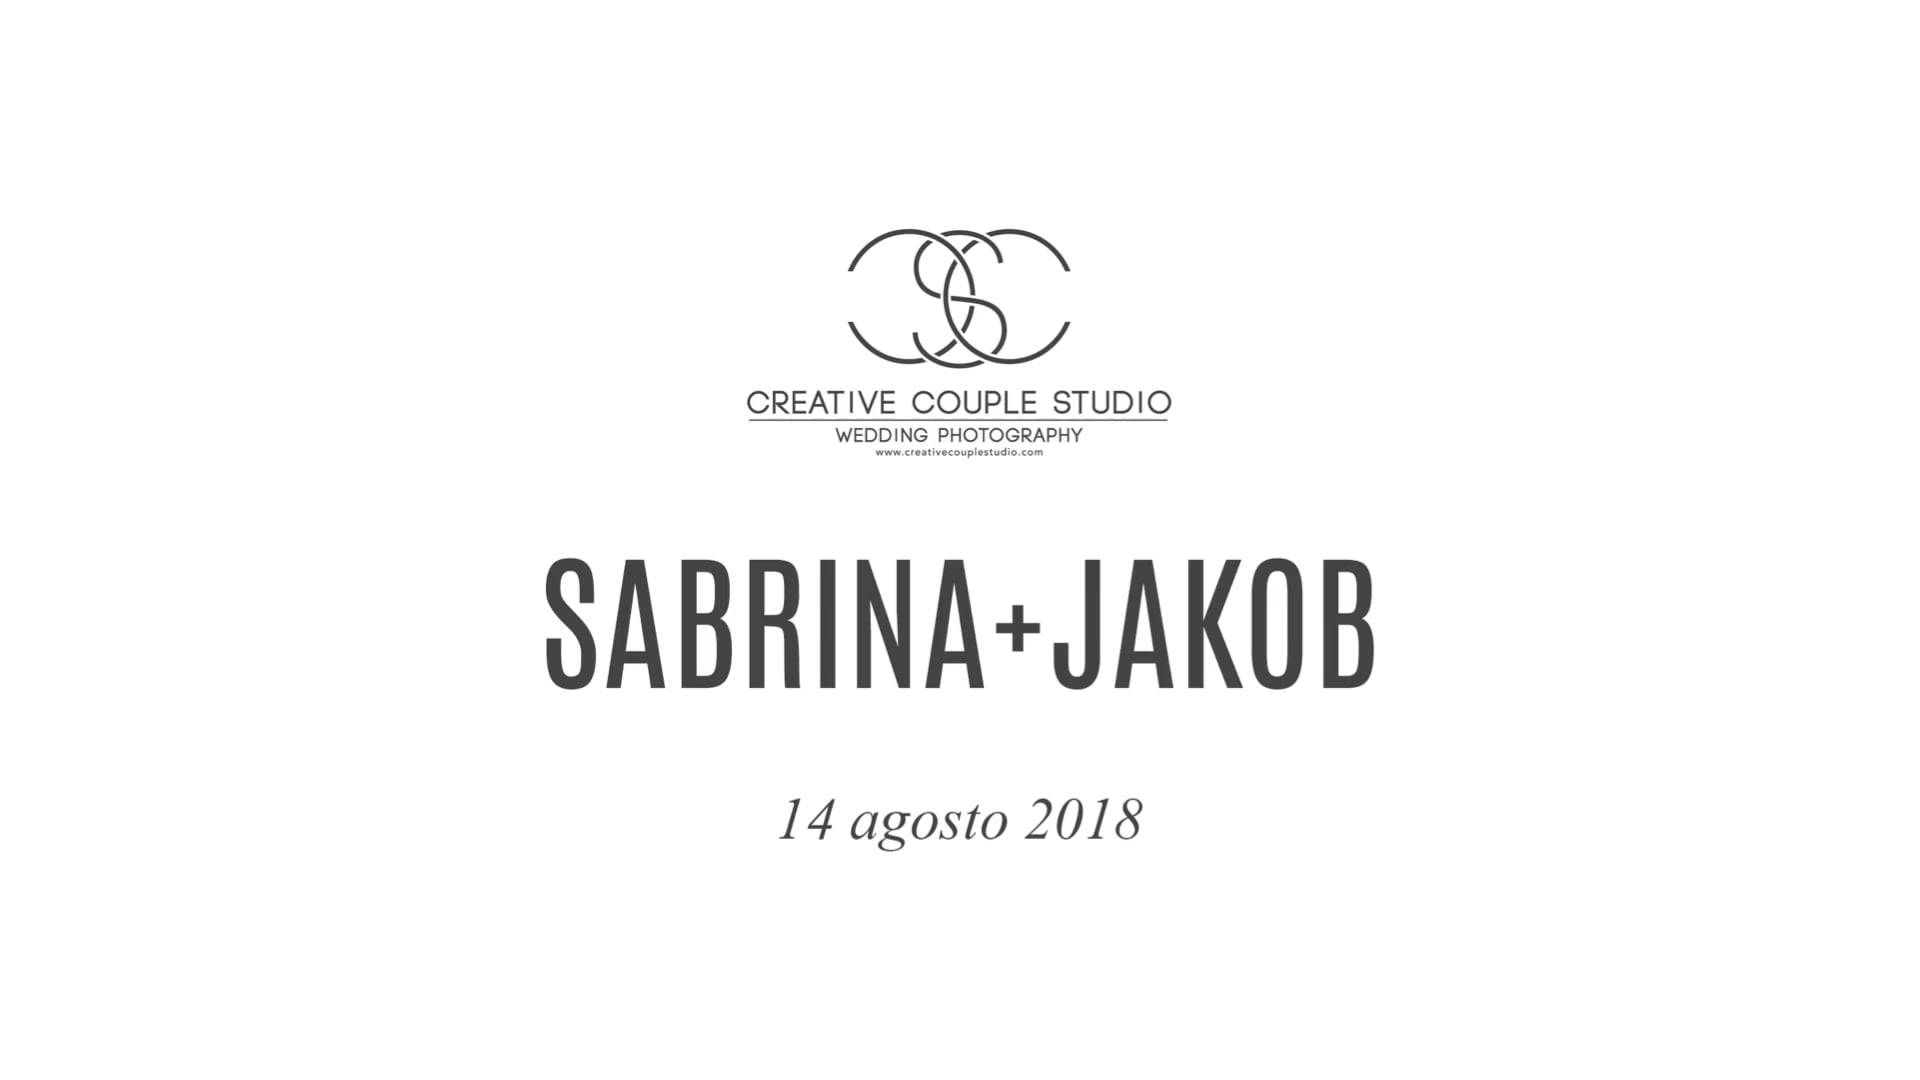 Creative Couple Studio